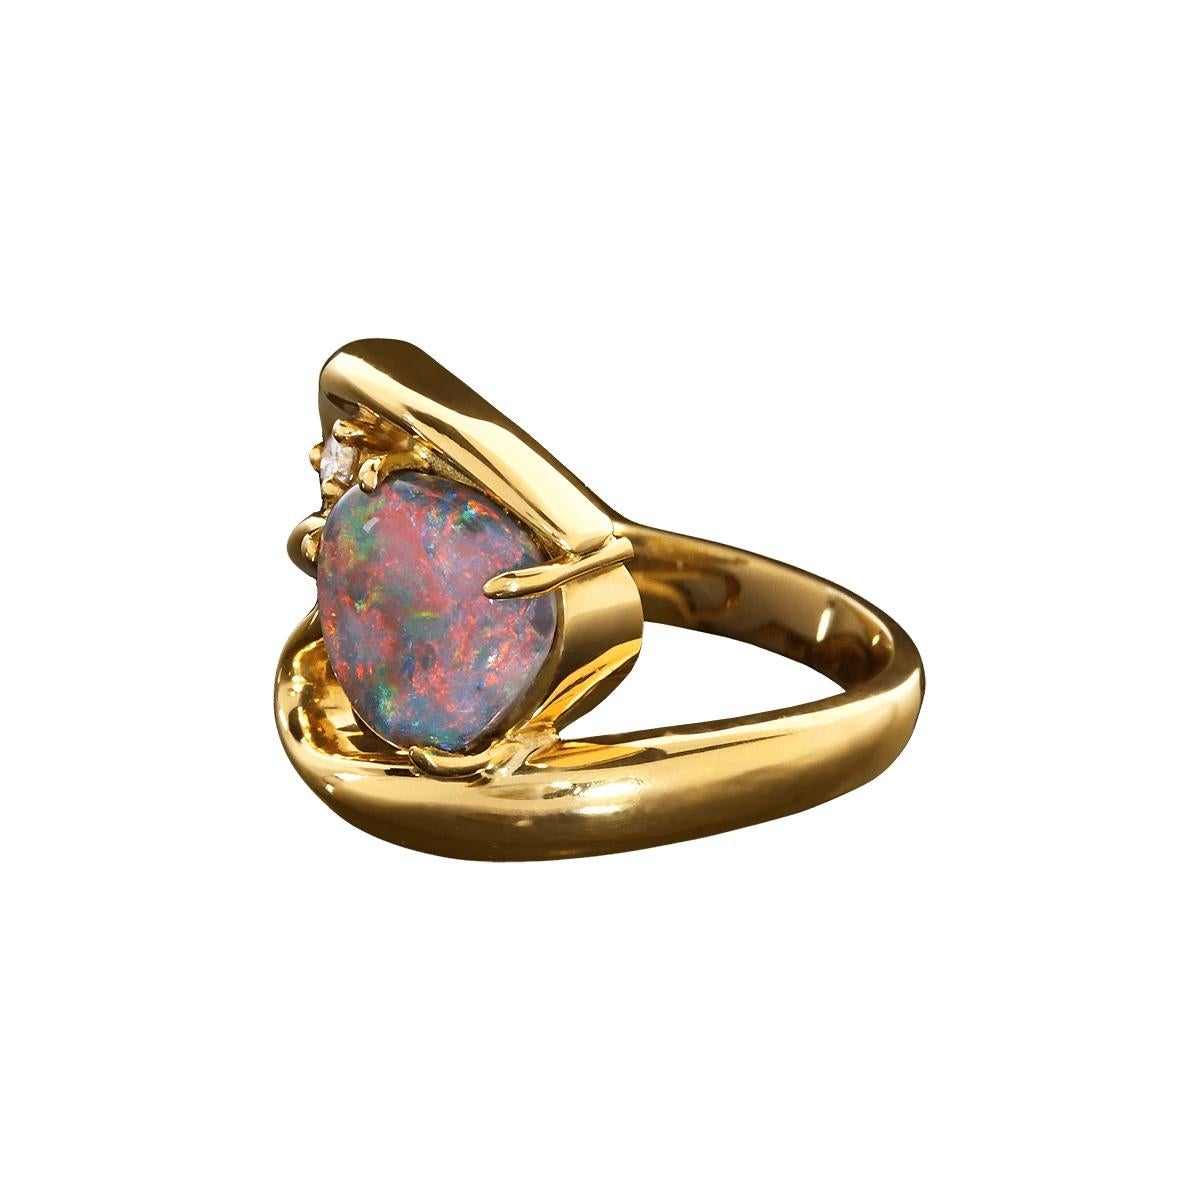 Schmuck ist tragbare Kunst, und dieser atemberaubende Ring ist da keine Ausnahme. Der hochgewölbte schwarze Opal mit seinen leuchtenden Rot-, Orange-, Violett-, Grün- und Blautönen ist ein wirklich einzigartiges Stück. Ein funkelnder weißer Diamant